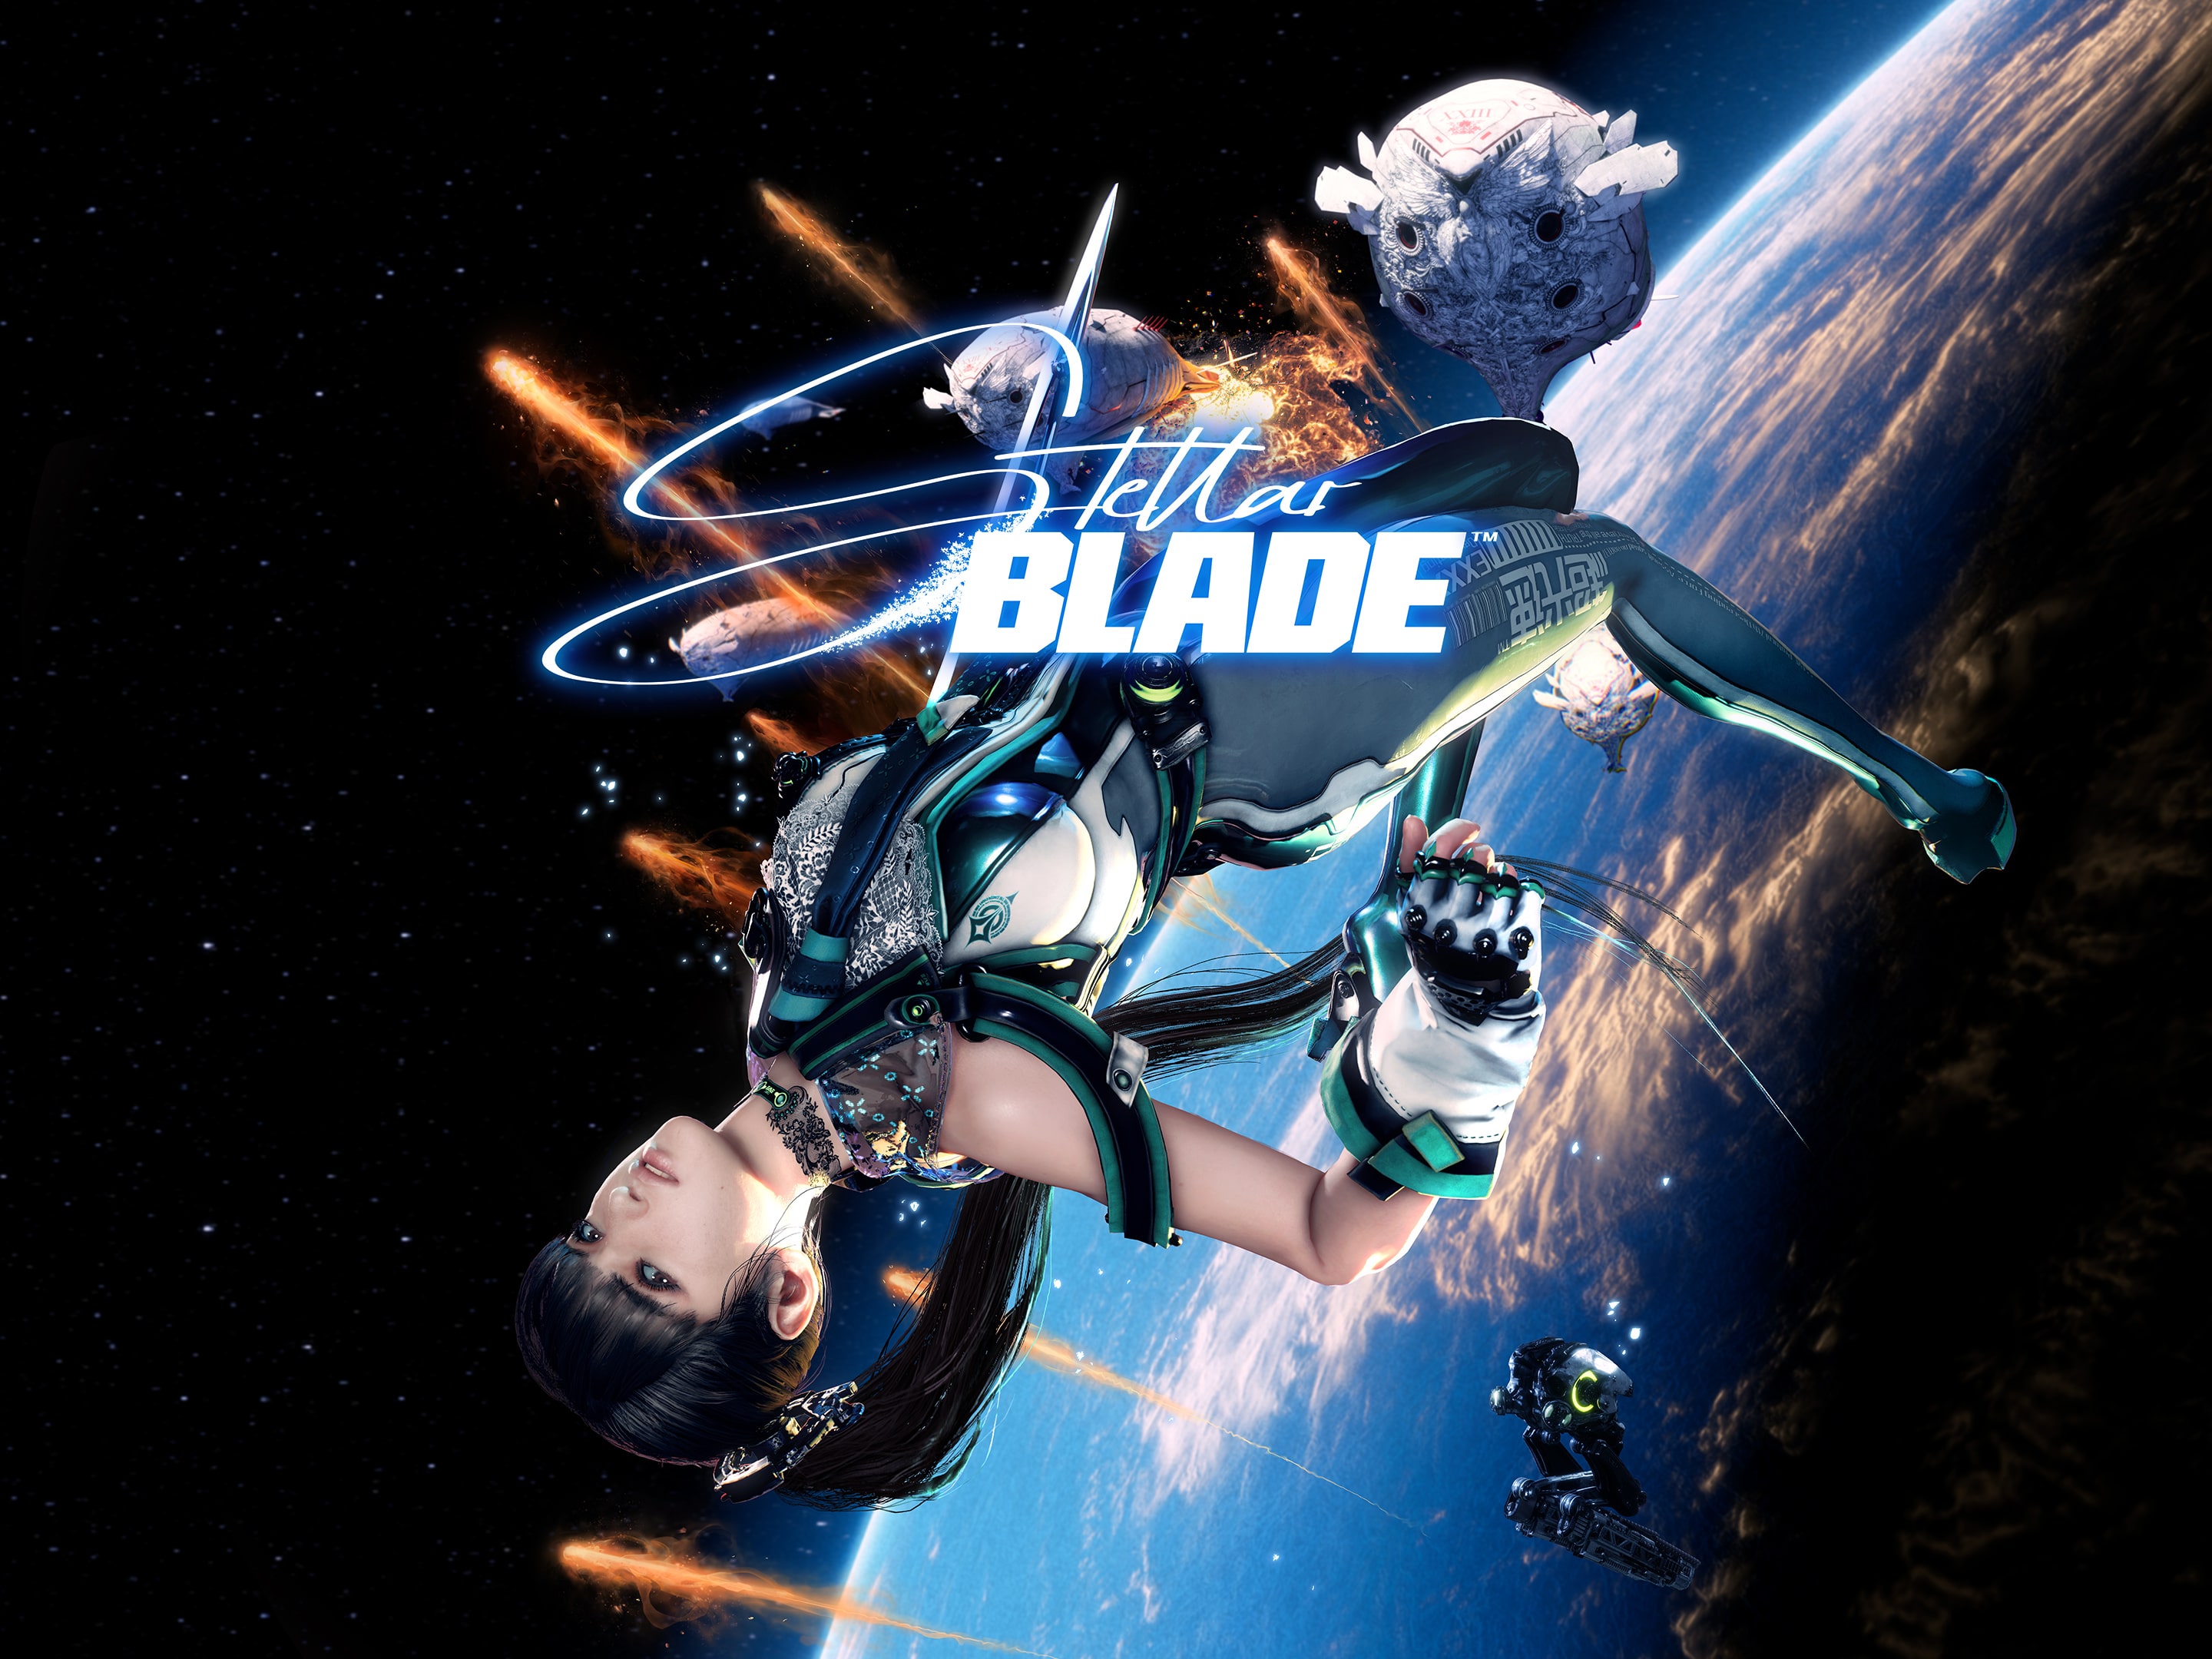 Stellar Blade | ゲームタイトル | PlayStation (日本)